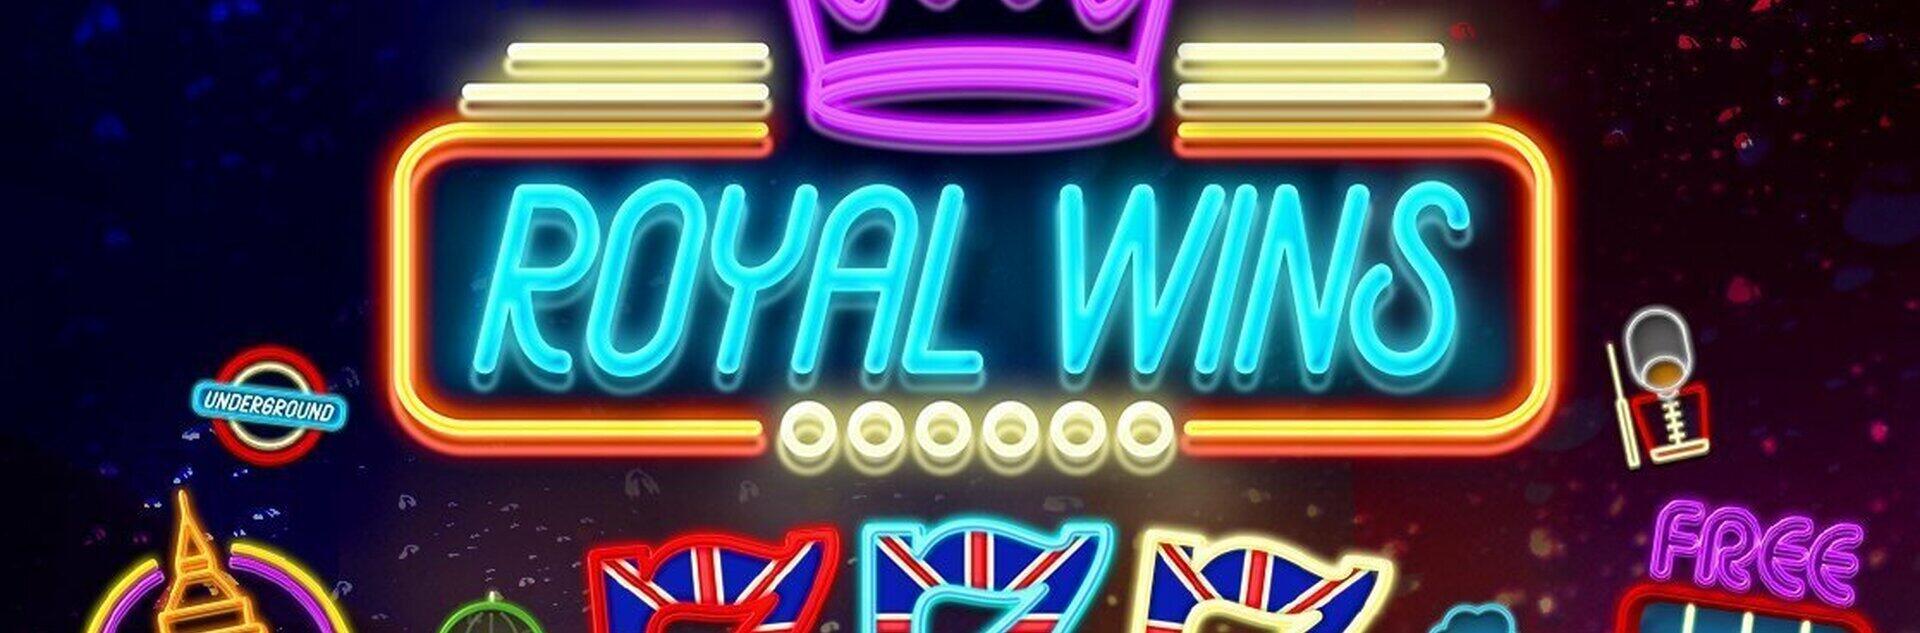 Royal Wins Slot